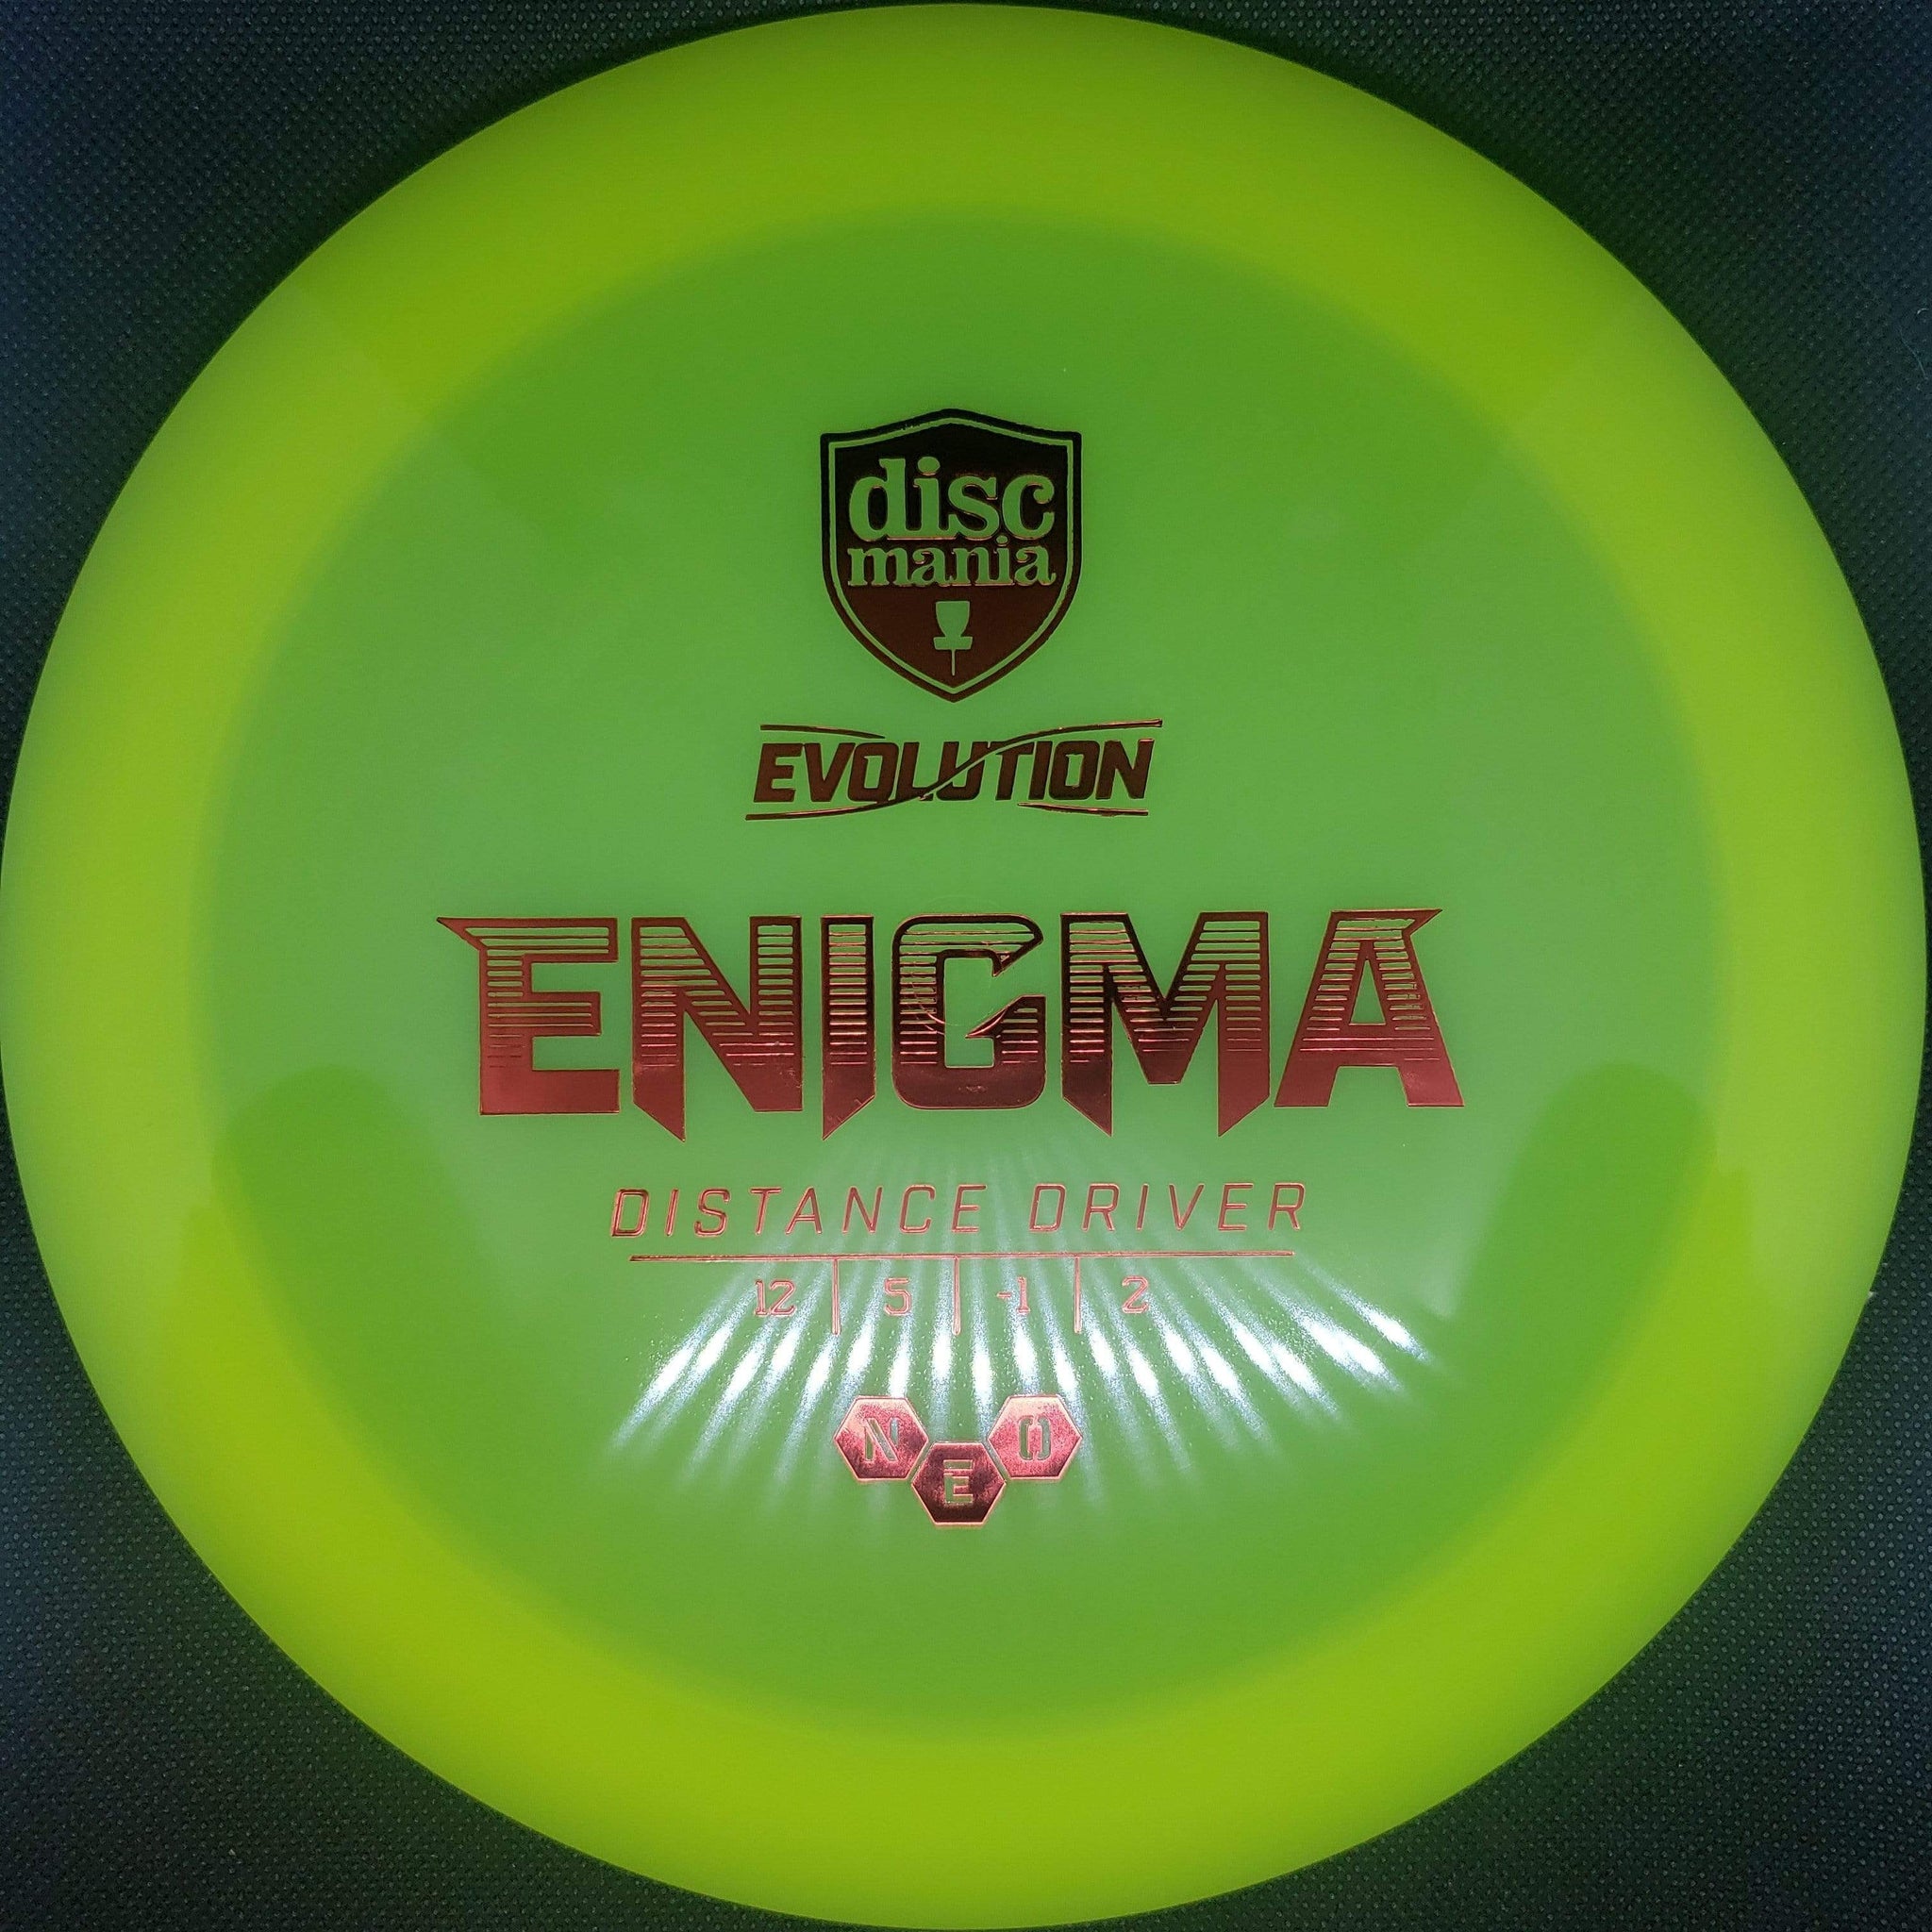 Special Edition Neo Lumen Enigma (Discmania Open) – Discmania Store